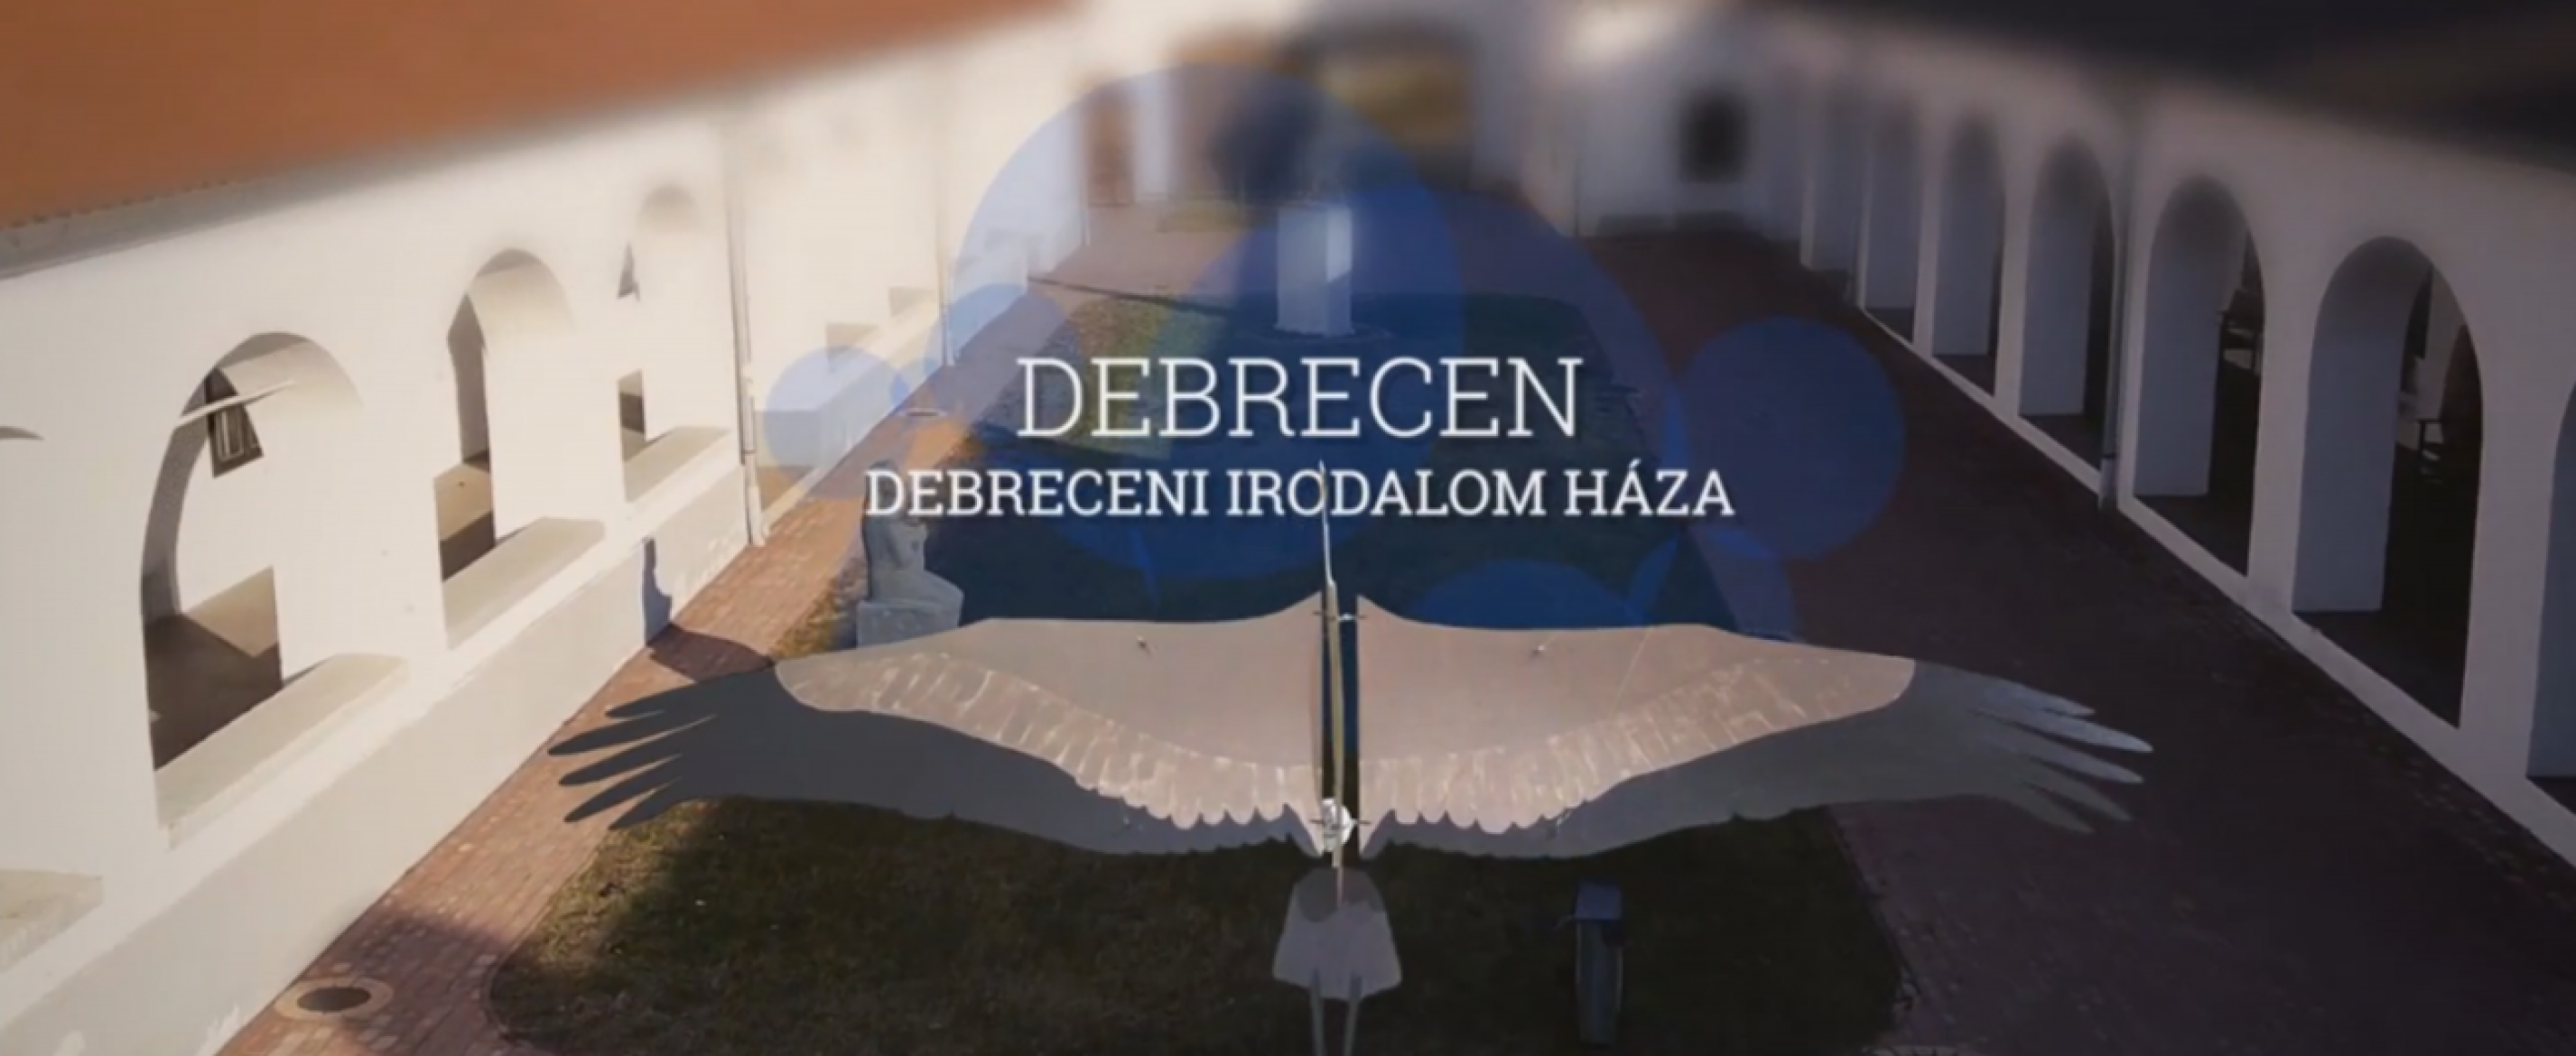 2020 a Debreceni Irodalom Házában